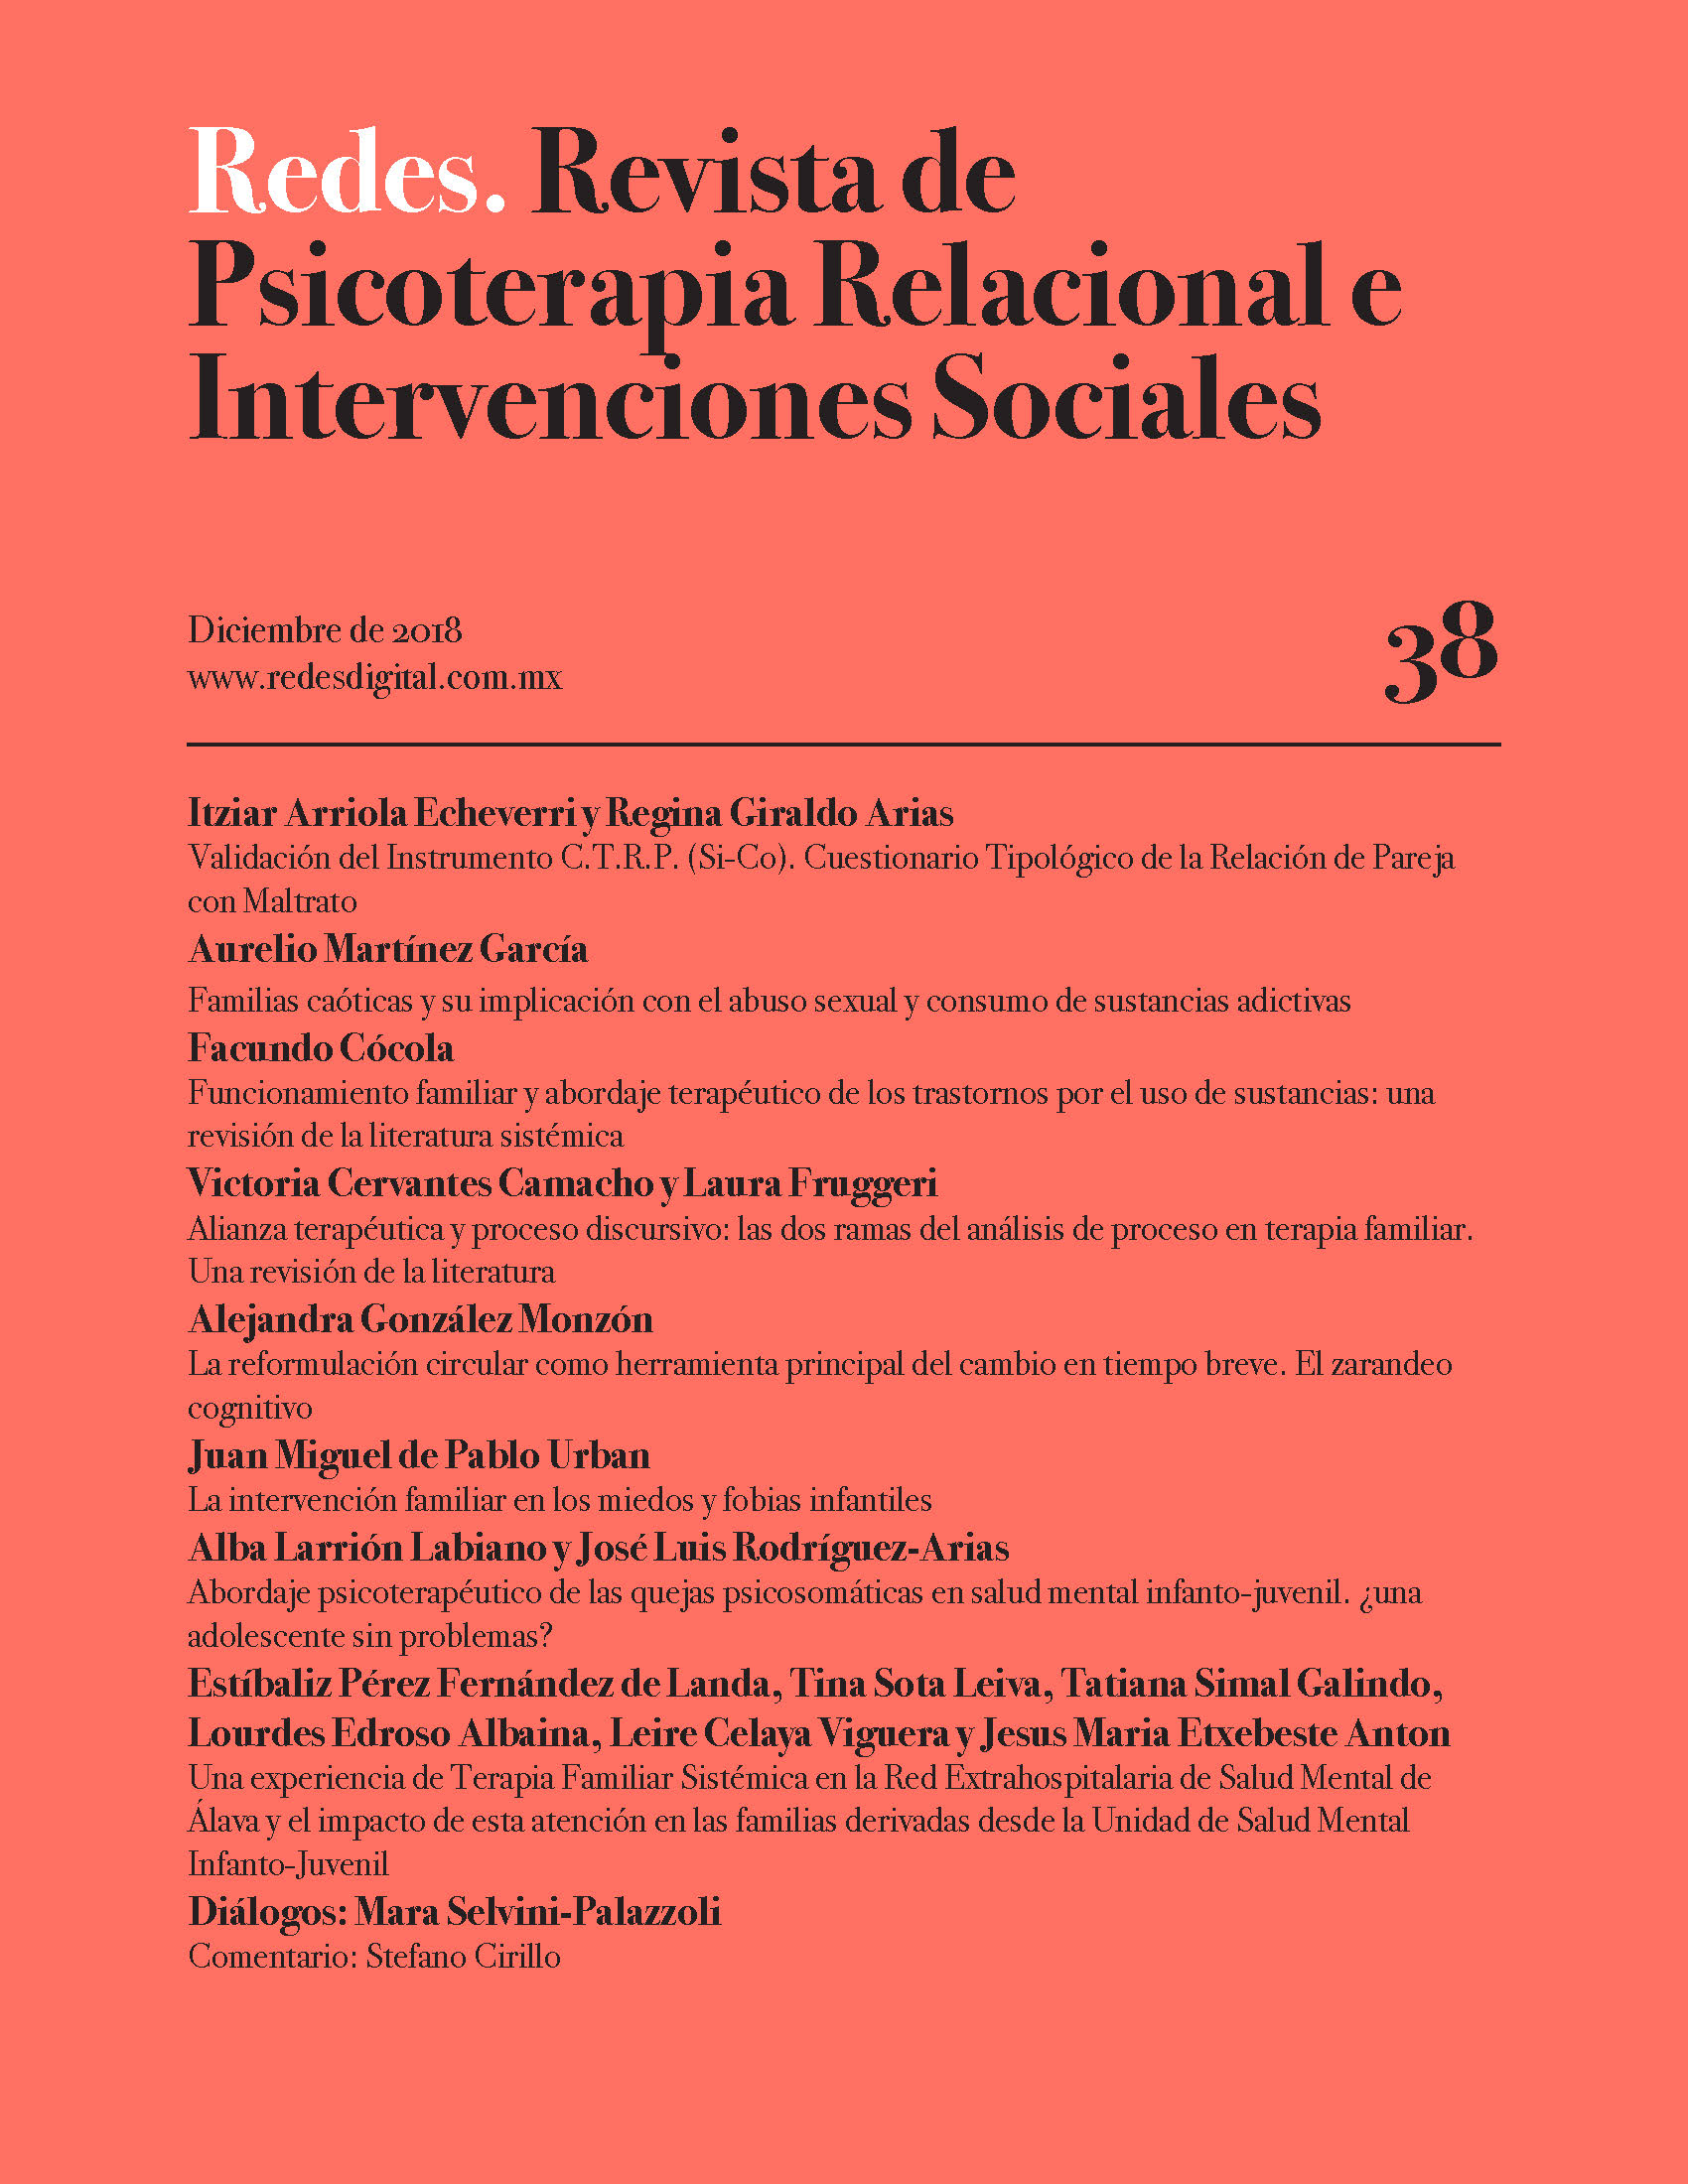 					Ver Núm. 38 (2018): Redes. Revista de Psicoterapia Relacional e Intervenciones Sociales. Diciembre, 2018
				